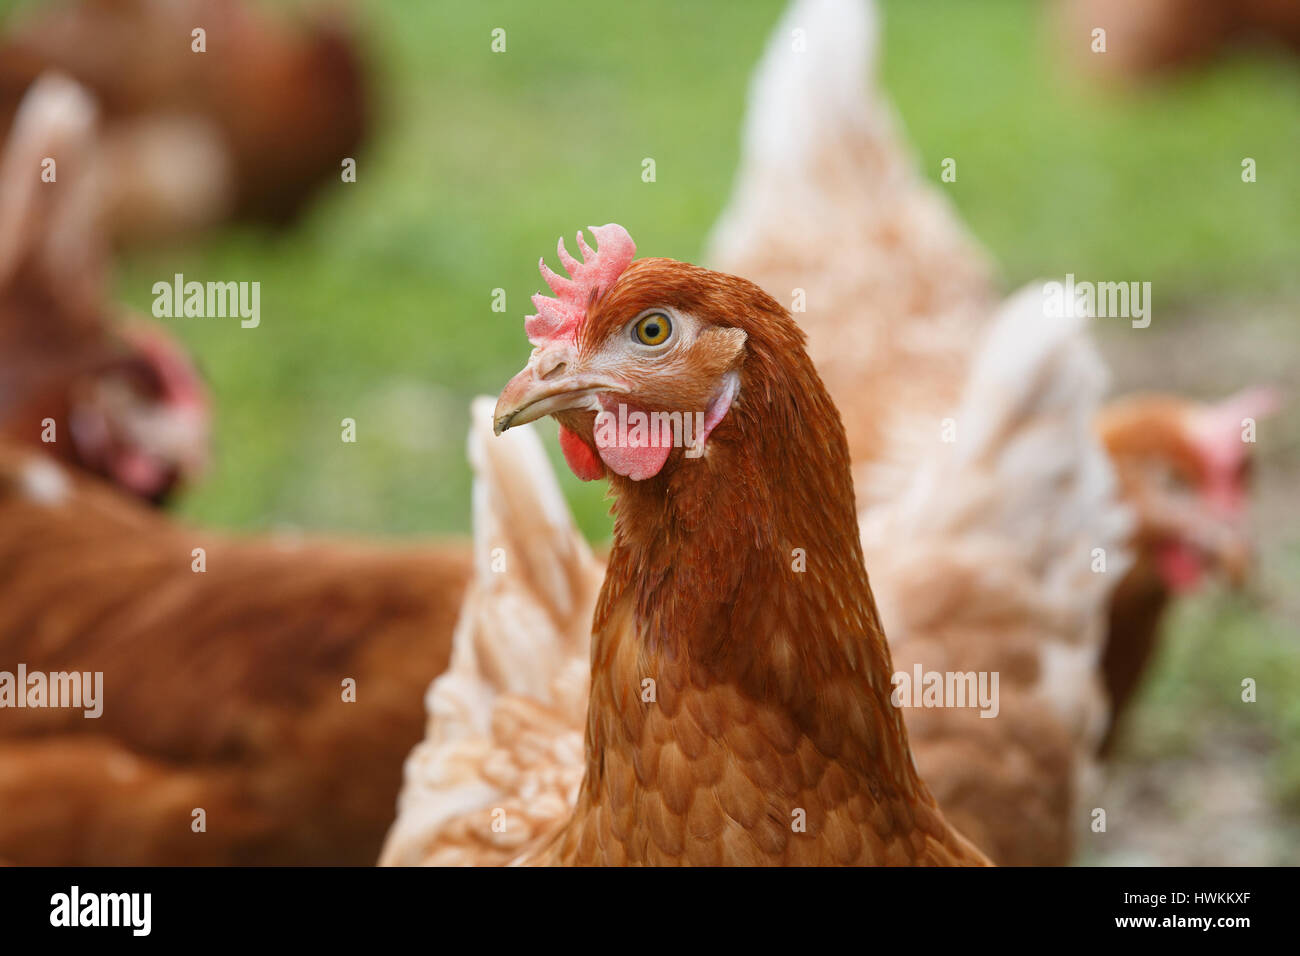 Galline allevate a terra (pollo) su di una azienda agricola biologica, pascolano liberamente su un prato. Agricoltura biologica, i diritti degli animali, torna al concetto di natura. Foto Stock